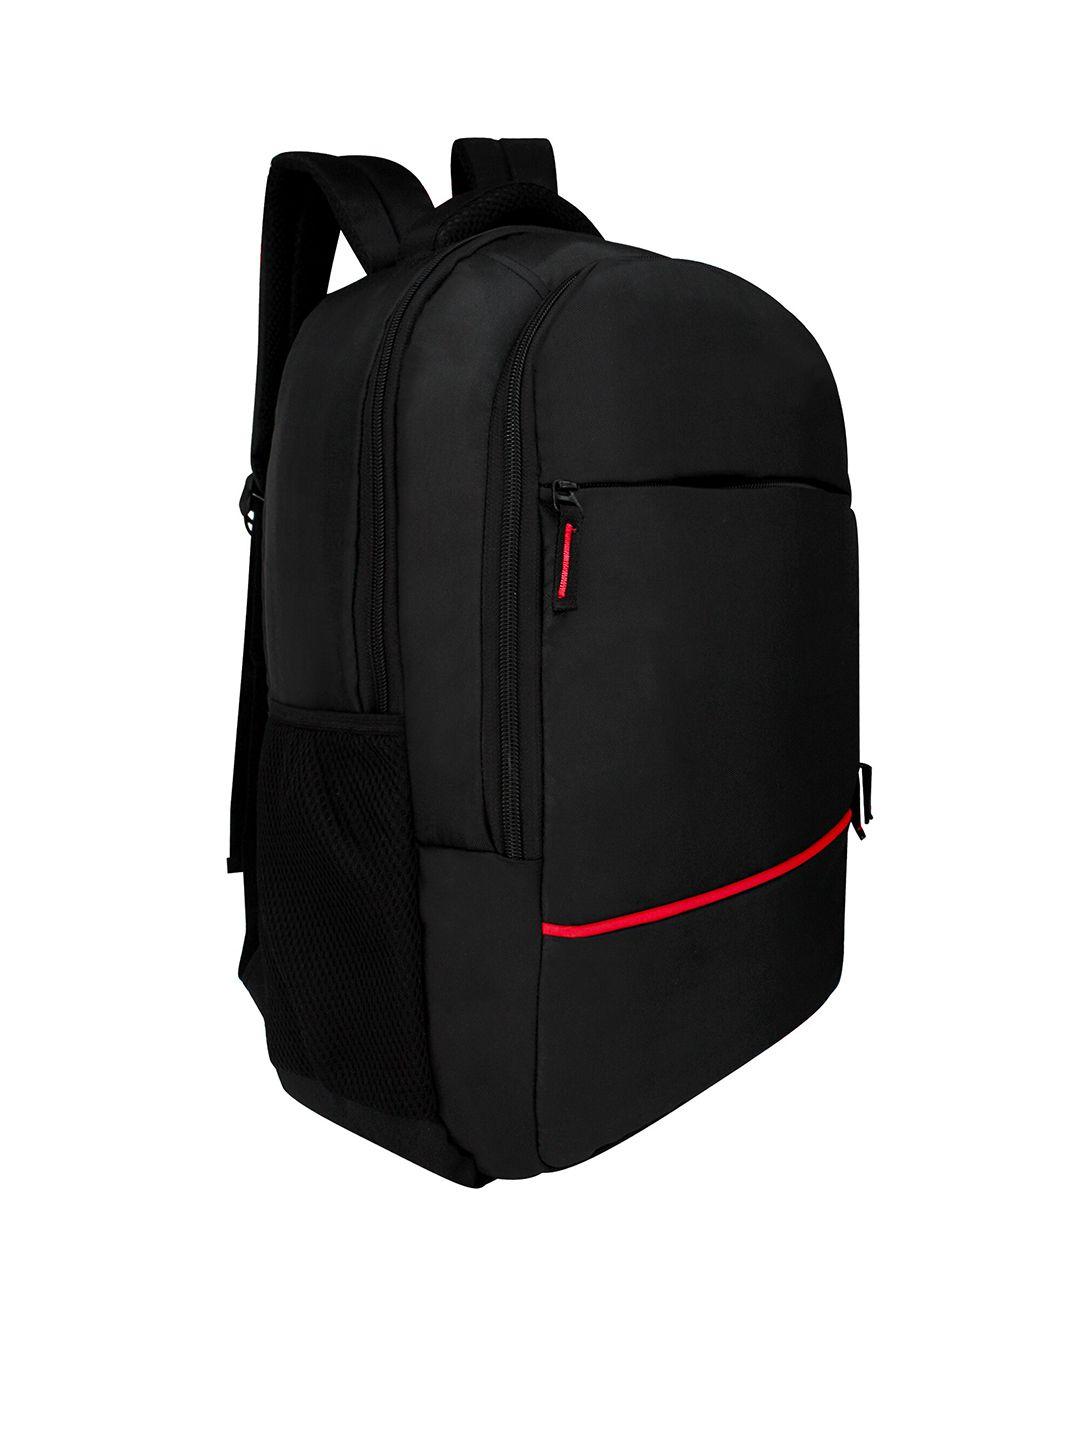 lookmuster unisex red & black laptop bag